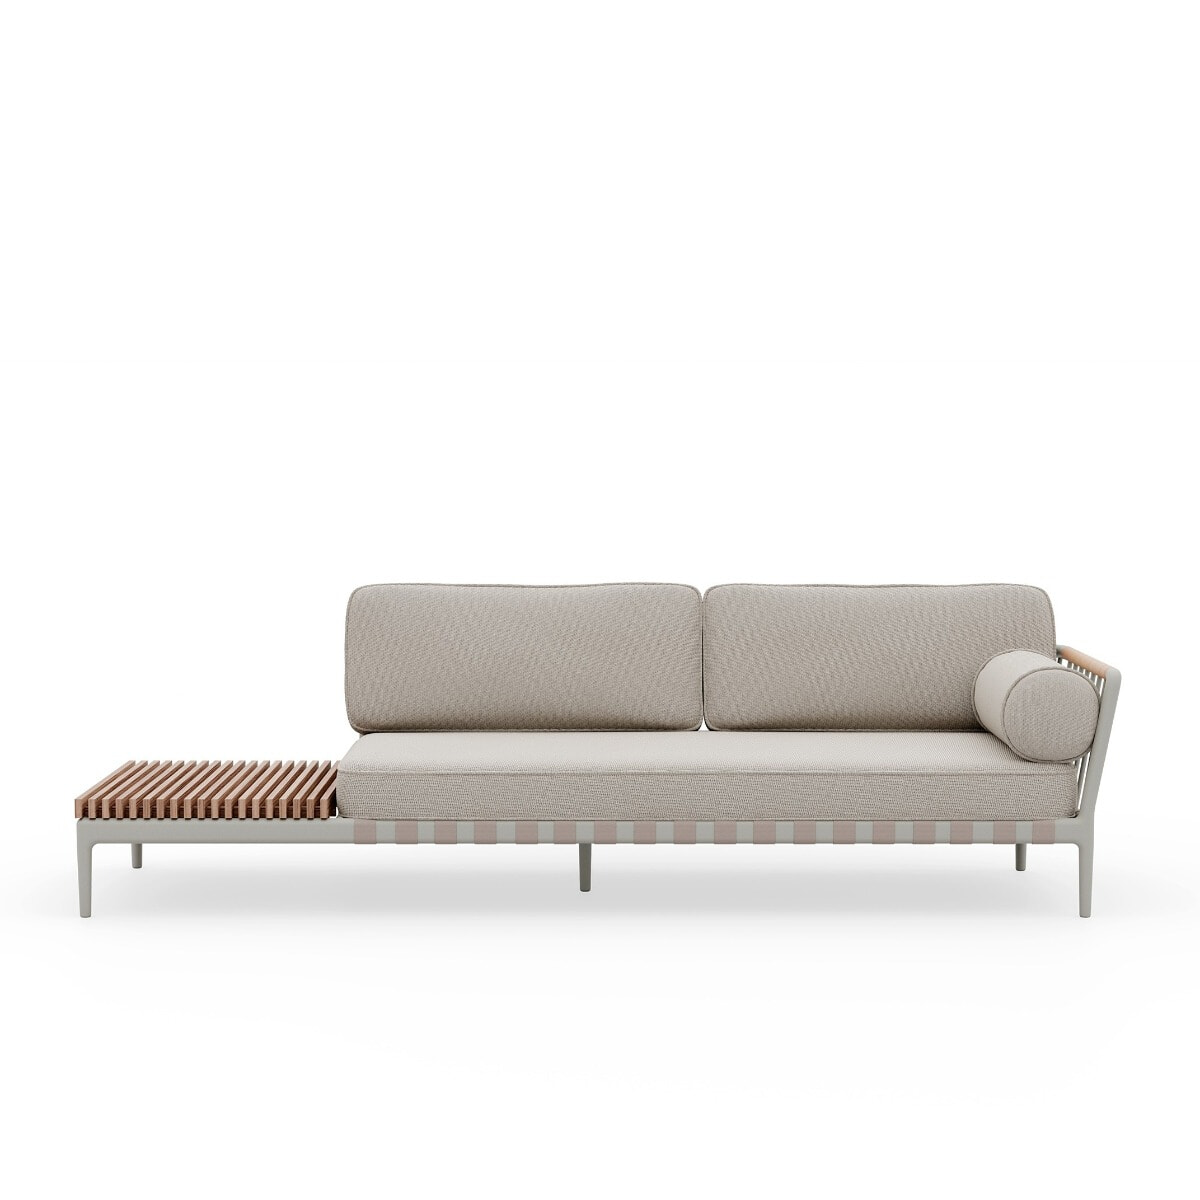 Vipp720 Outdoor Open-Air sofa left - design